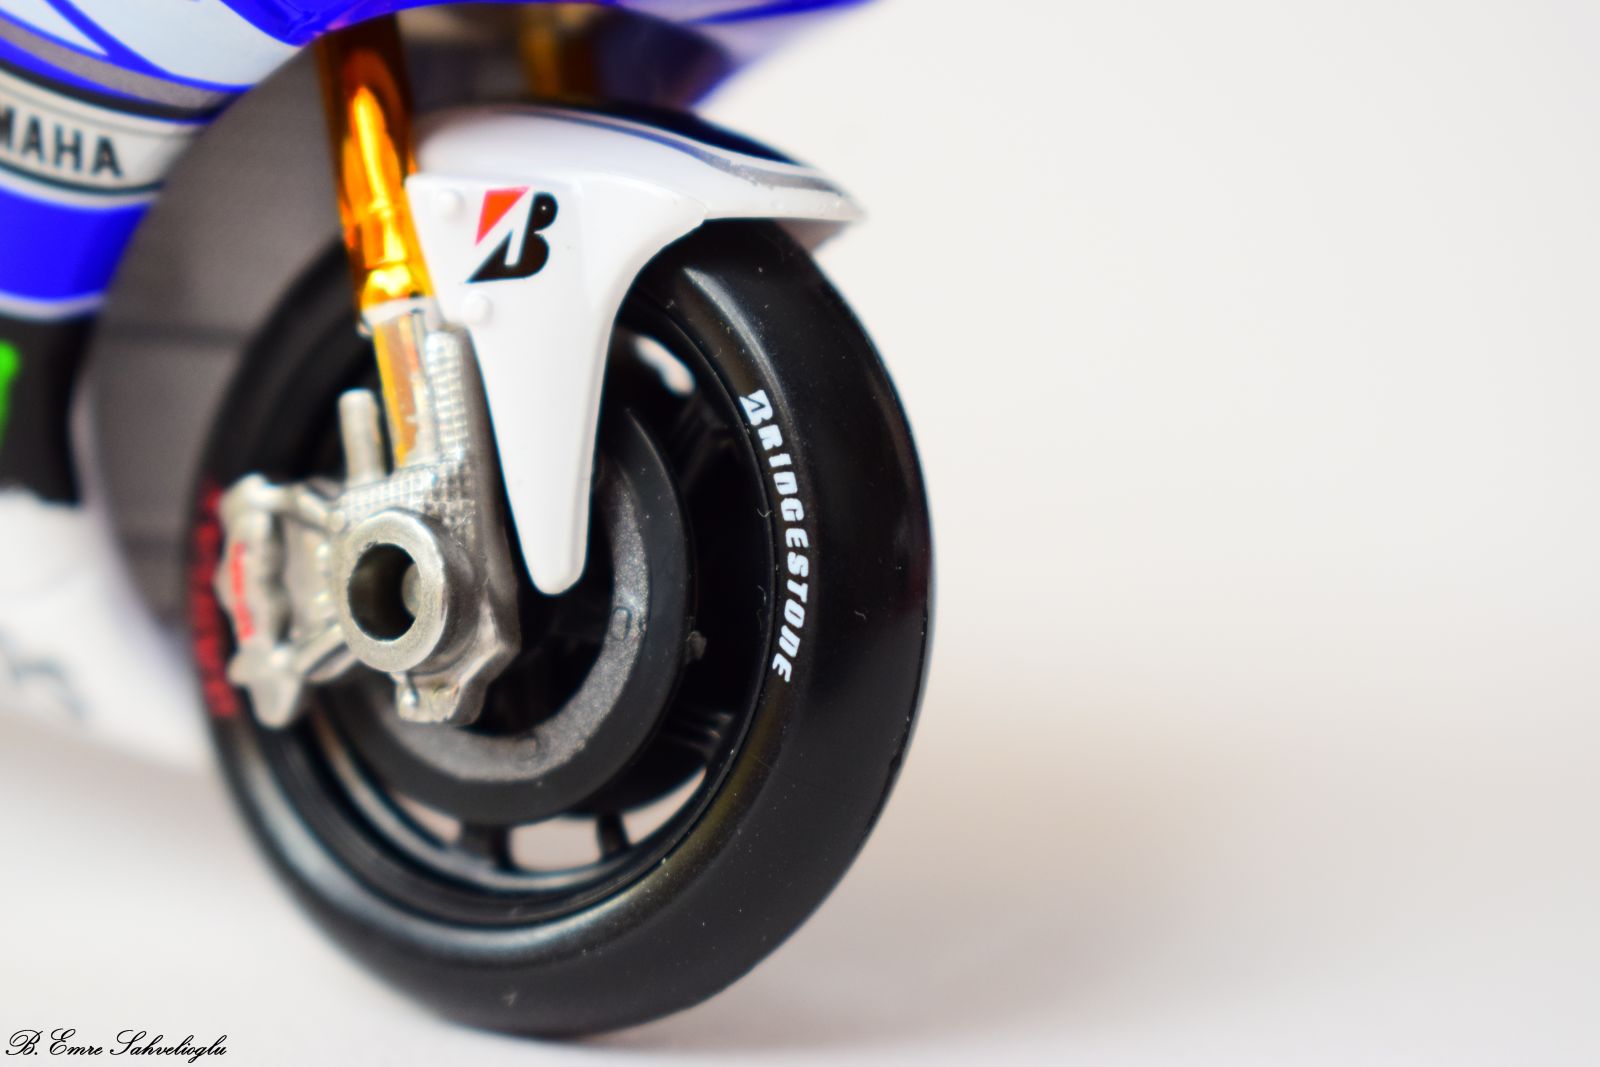 Illustration for article titled MotoGP 2013 -Jorge Lorenzos Yamaha